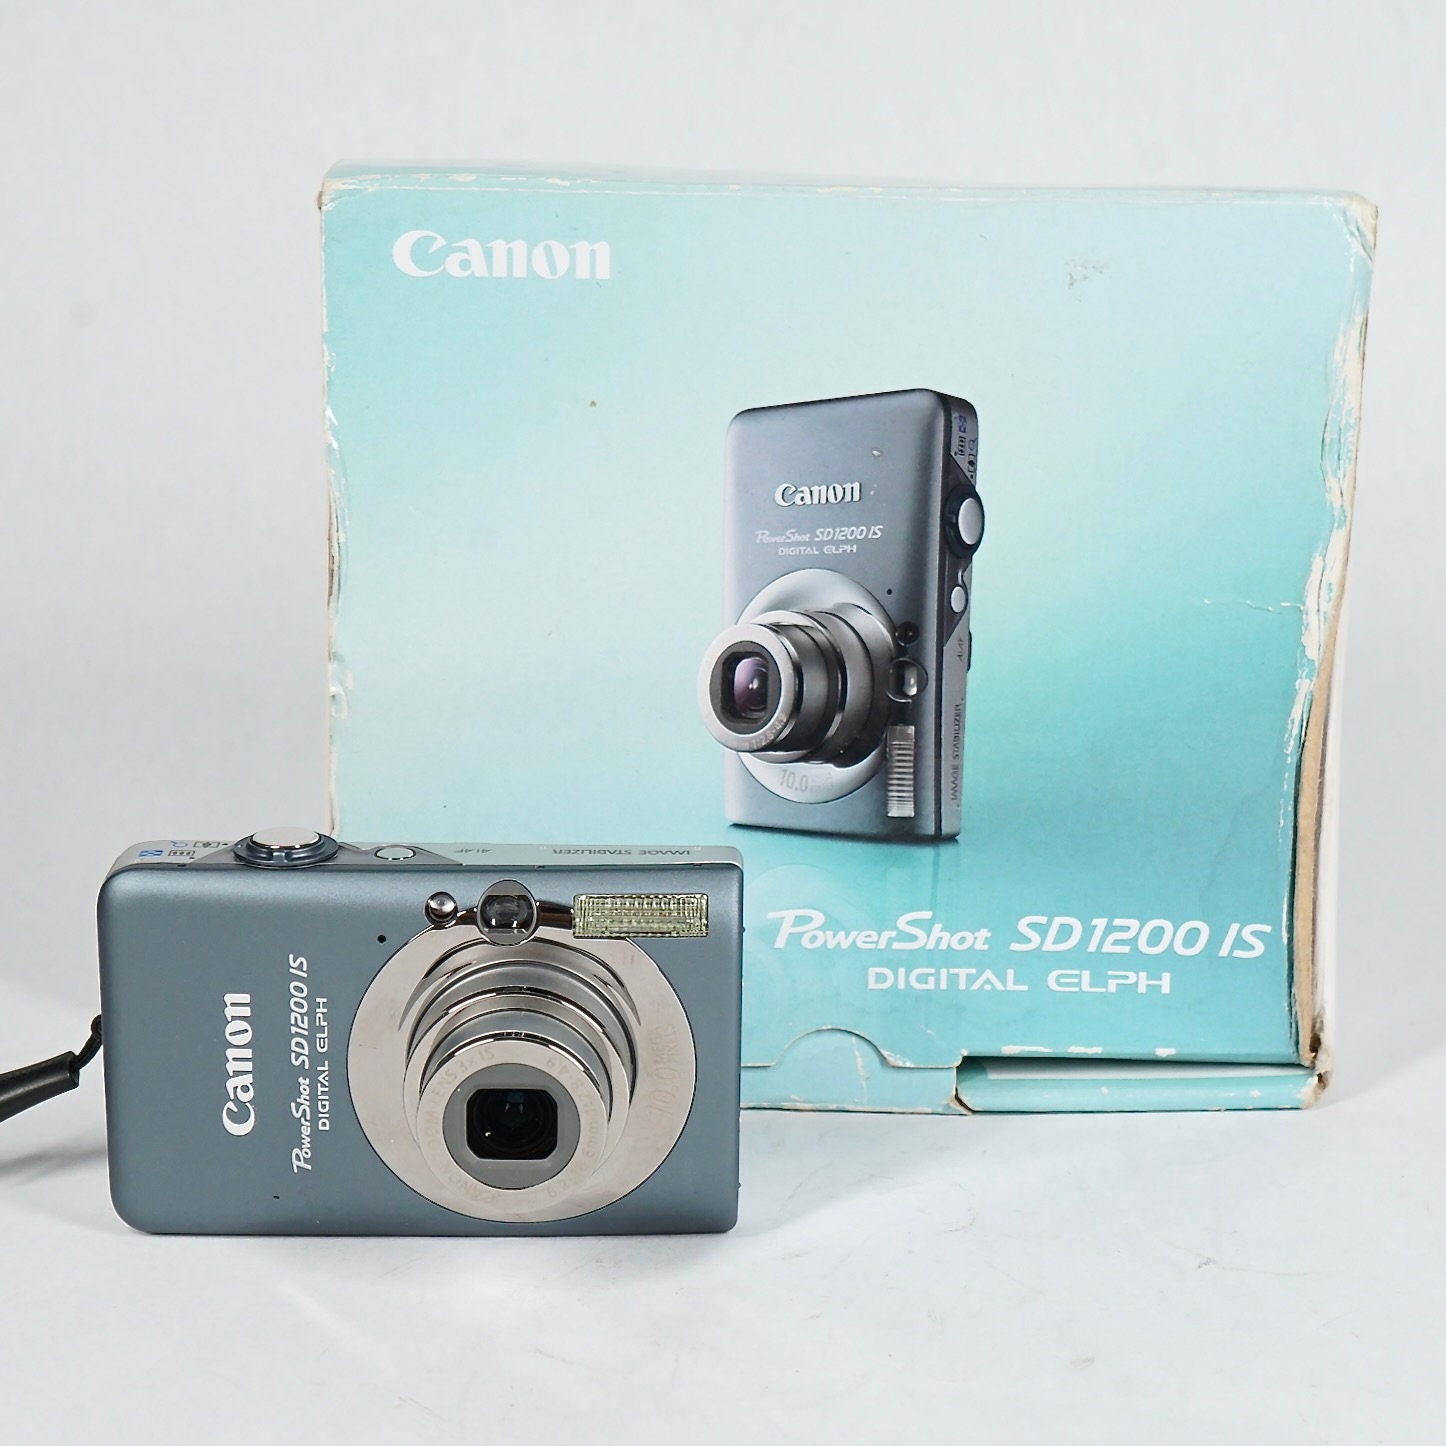 Cámara Fotográfica Digital Canon PowerShot SD1200 IS, 10.0MP